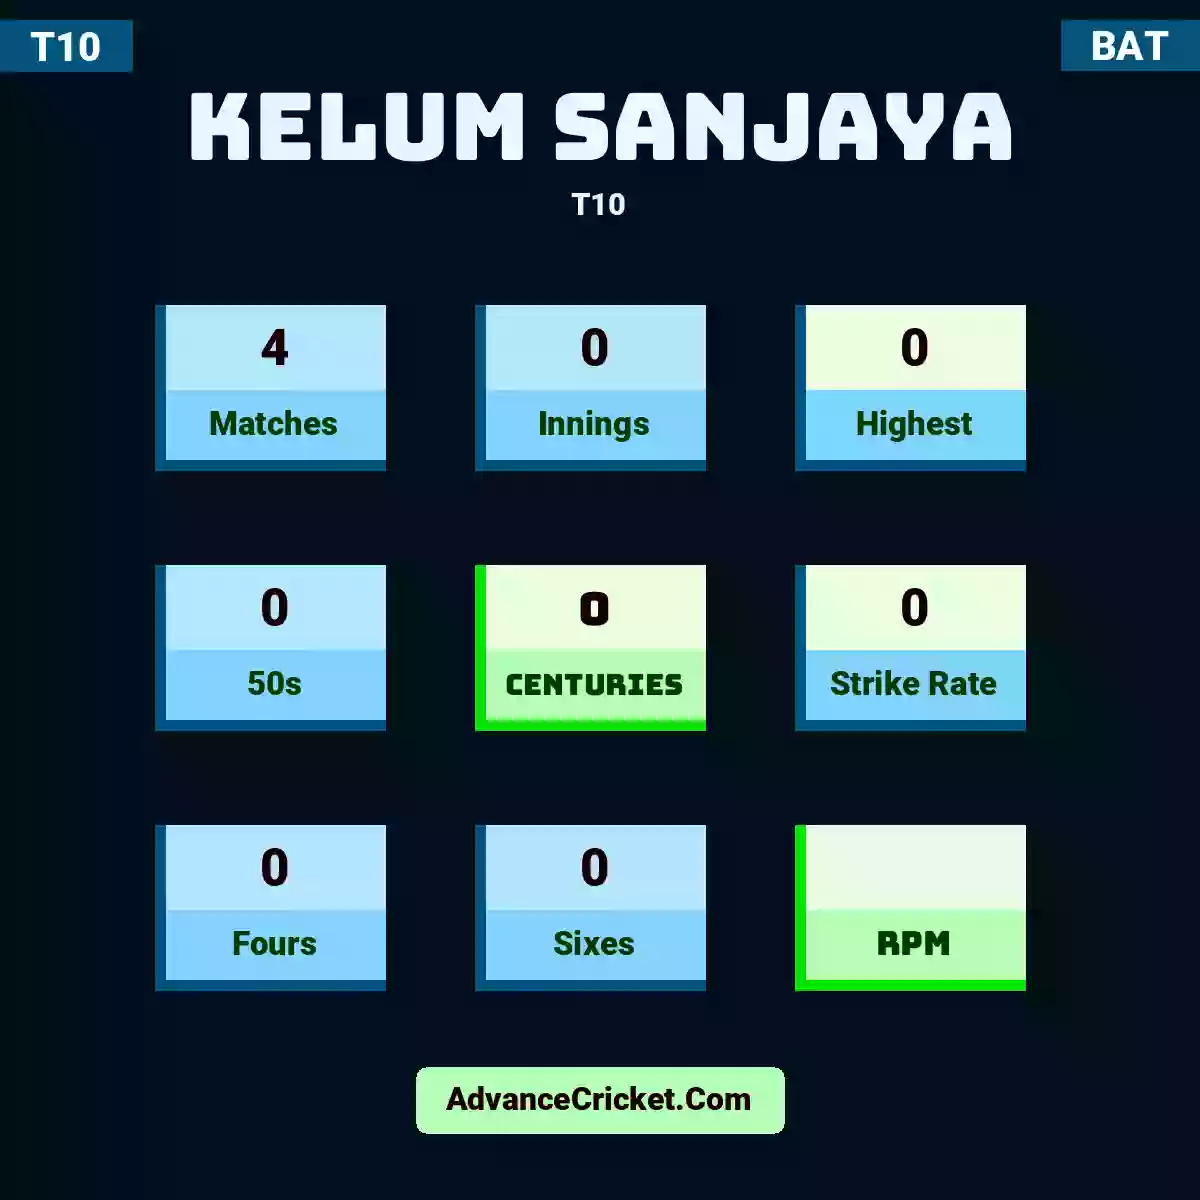 Kelum Sanjaya T10 , Kelum Sanjaya played 4 matches, scored 0 runs as highest, 0 half-centuries, and 0 centuries, with a strike rate of 0. K.Sanjaya hit 0 fours and 0 sixes.